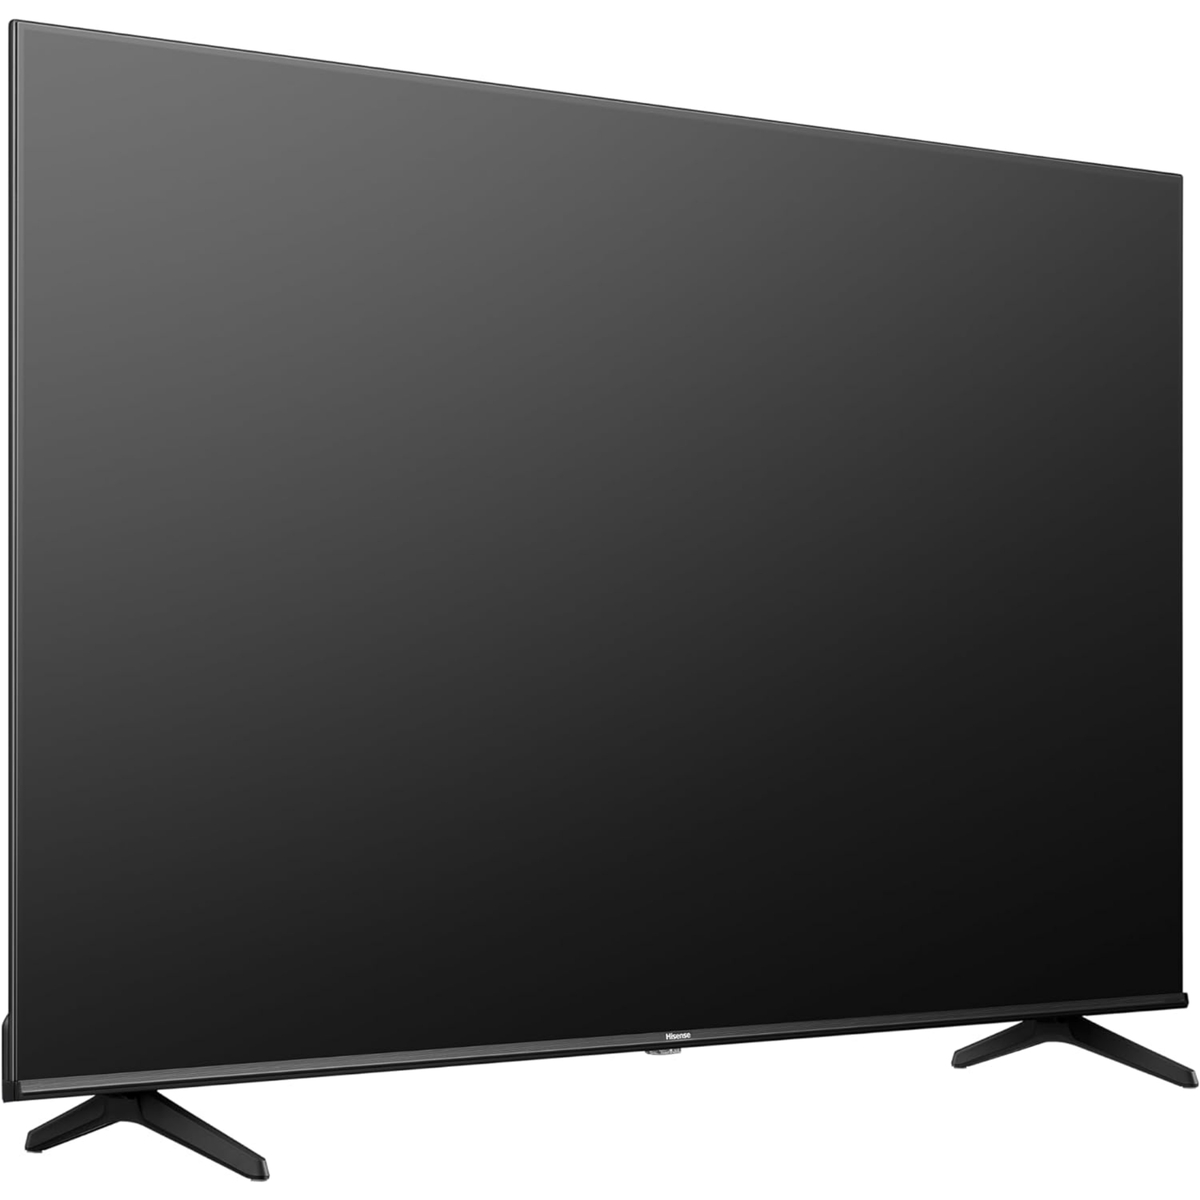 Hisense 55 inches 4K UHD Smart TV, 55E6K